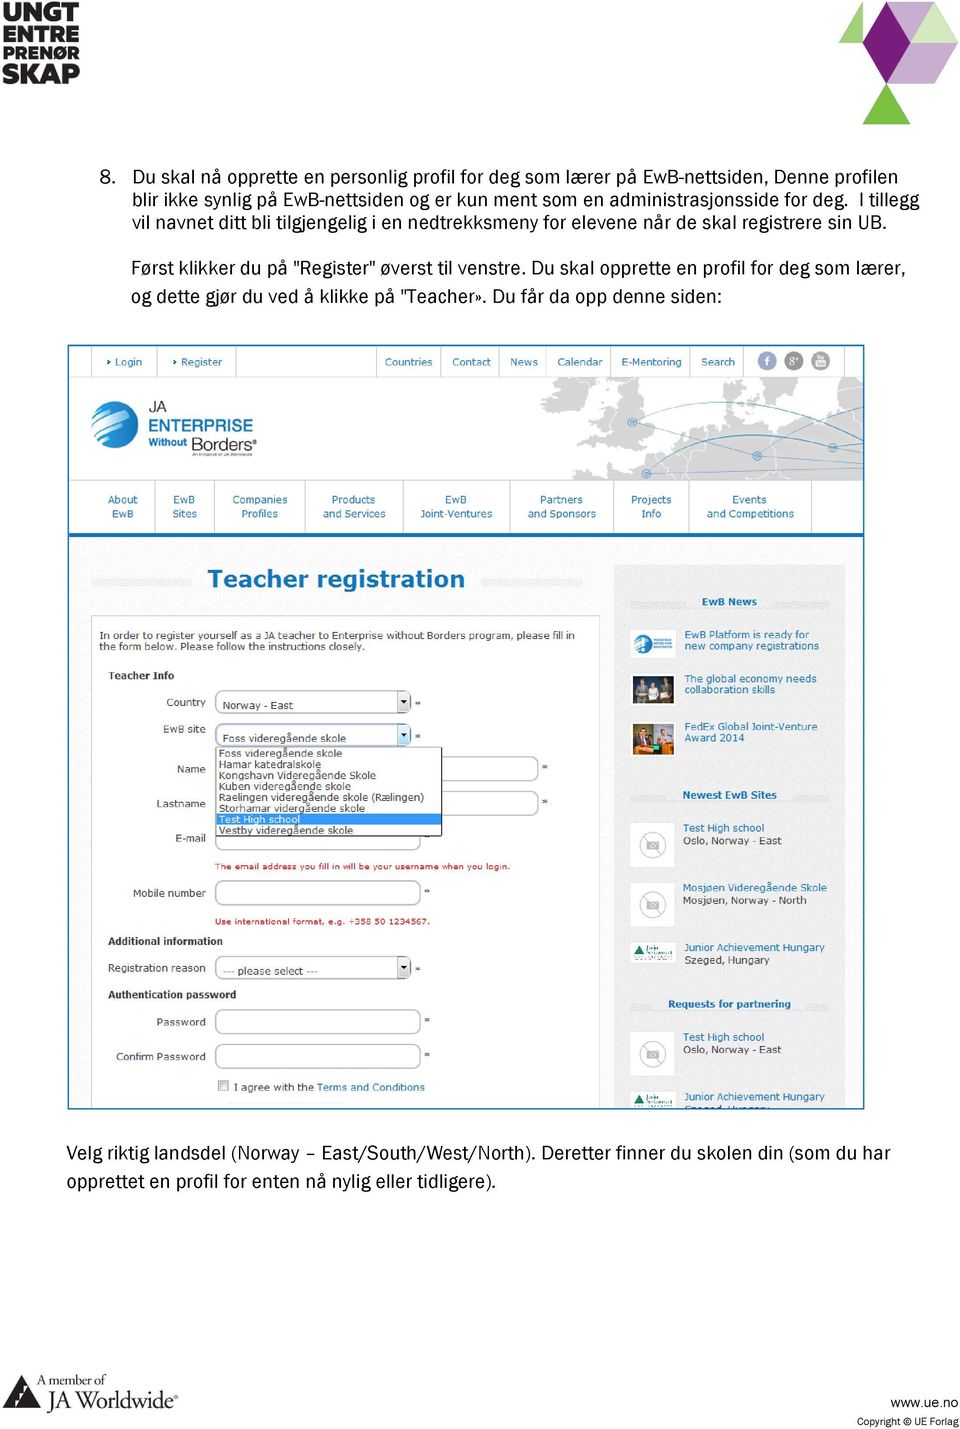 Først klikker du på "Register" øverst til venstre. Du skal opprette en profil for deg som lærer, og dette gjør du ved å klikke på "Teacher».